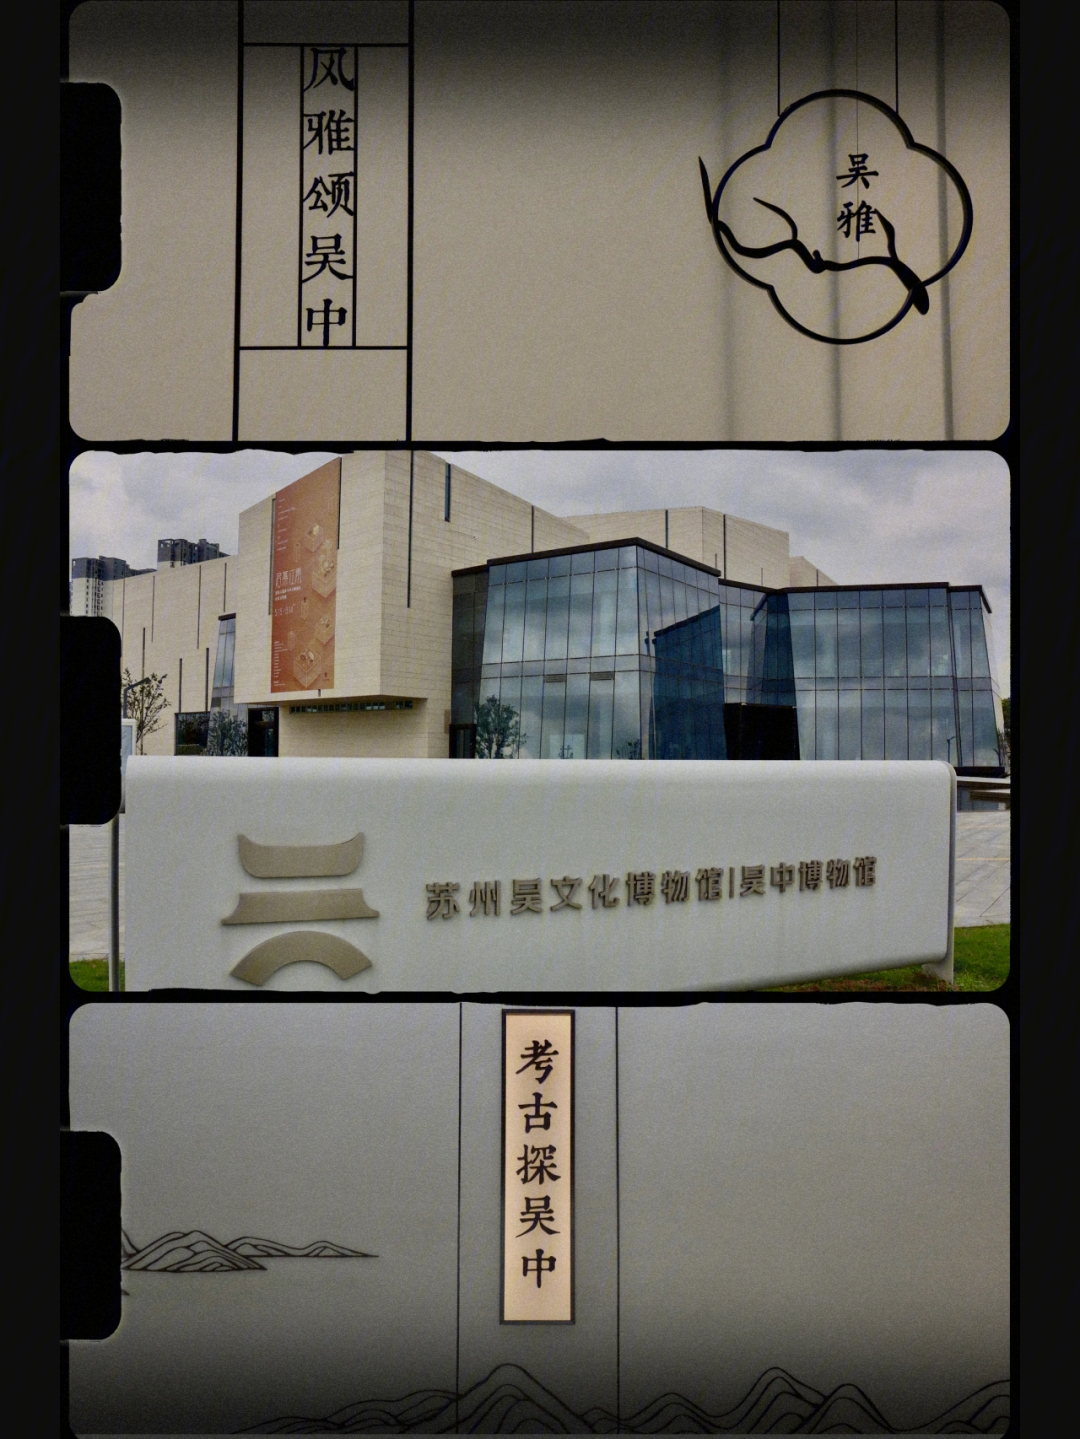 苏州吴文化博物馆苏州吴中博物馆